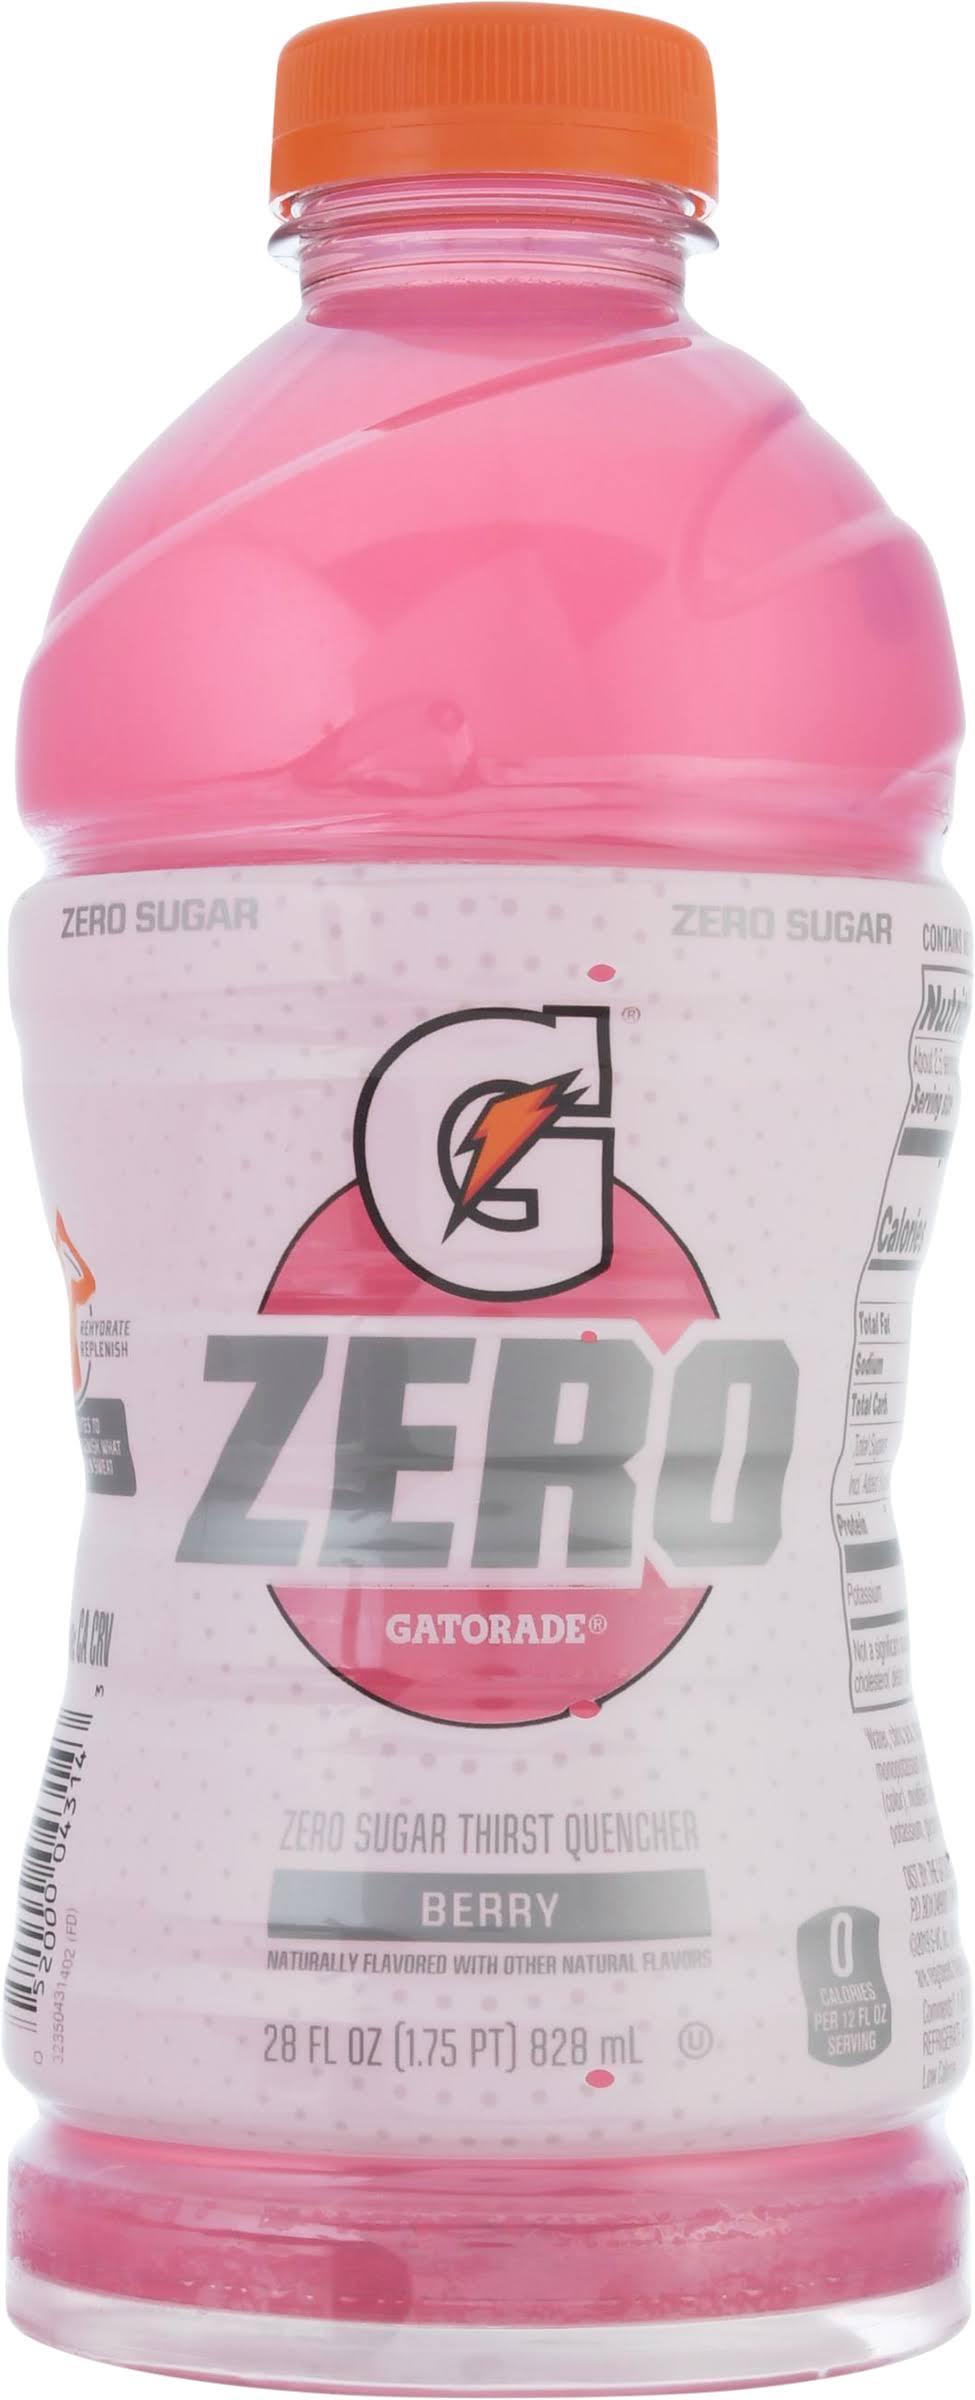 Gatorade Zero Thirst Quencher, Zero Sugar, Berry - 28 fl oz